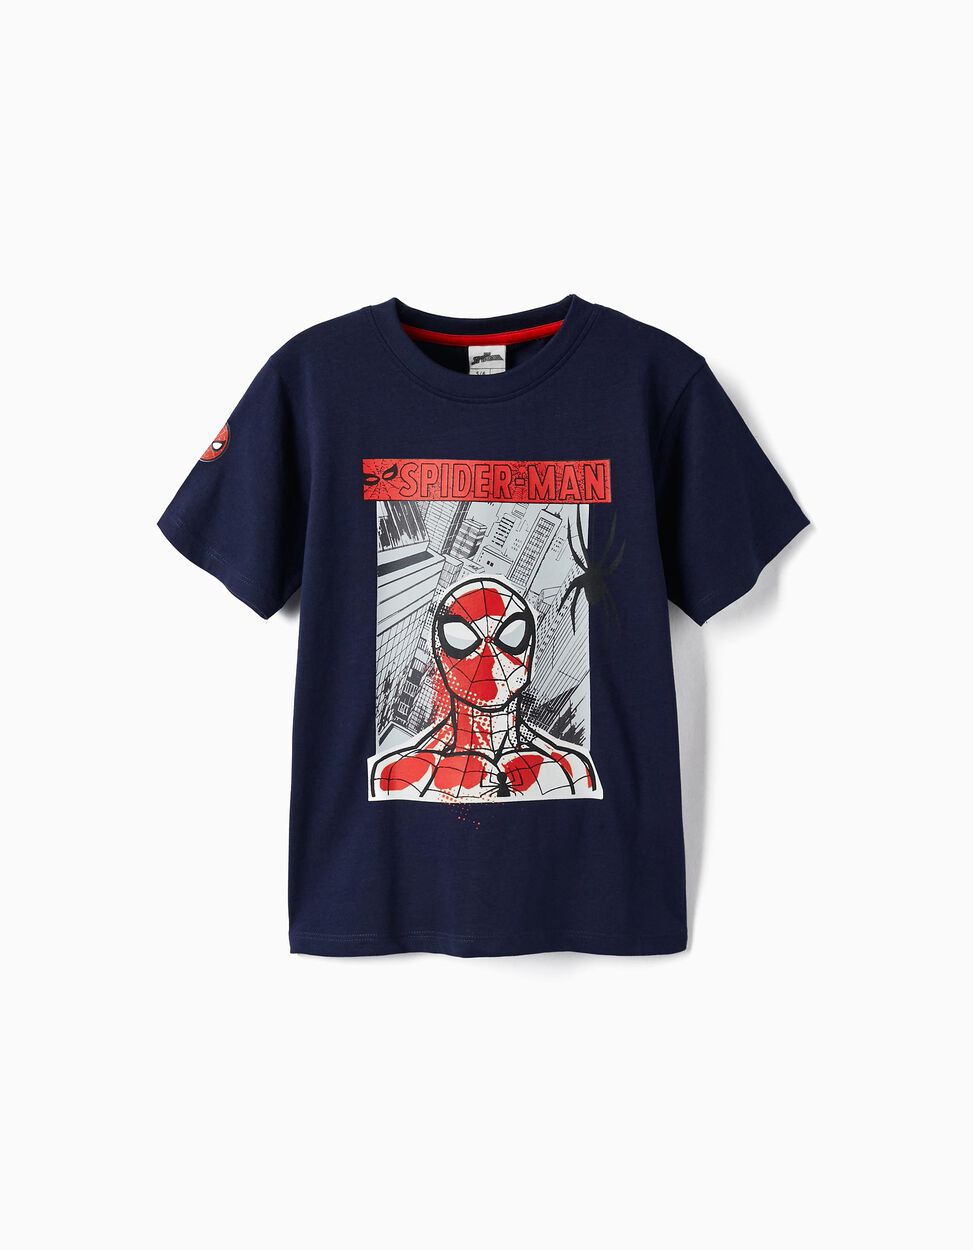 Buy Online Cotton T-Shirt for Boys 'Spider-Man', Dark Blue